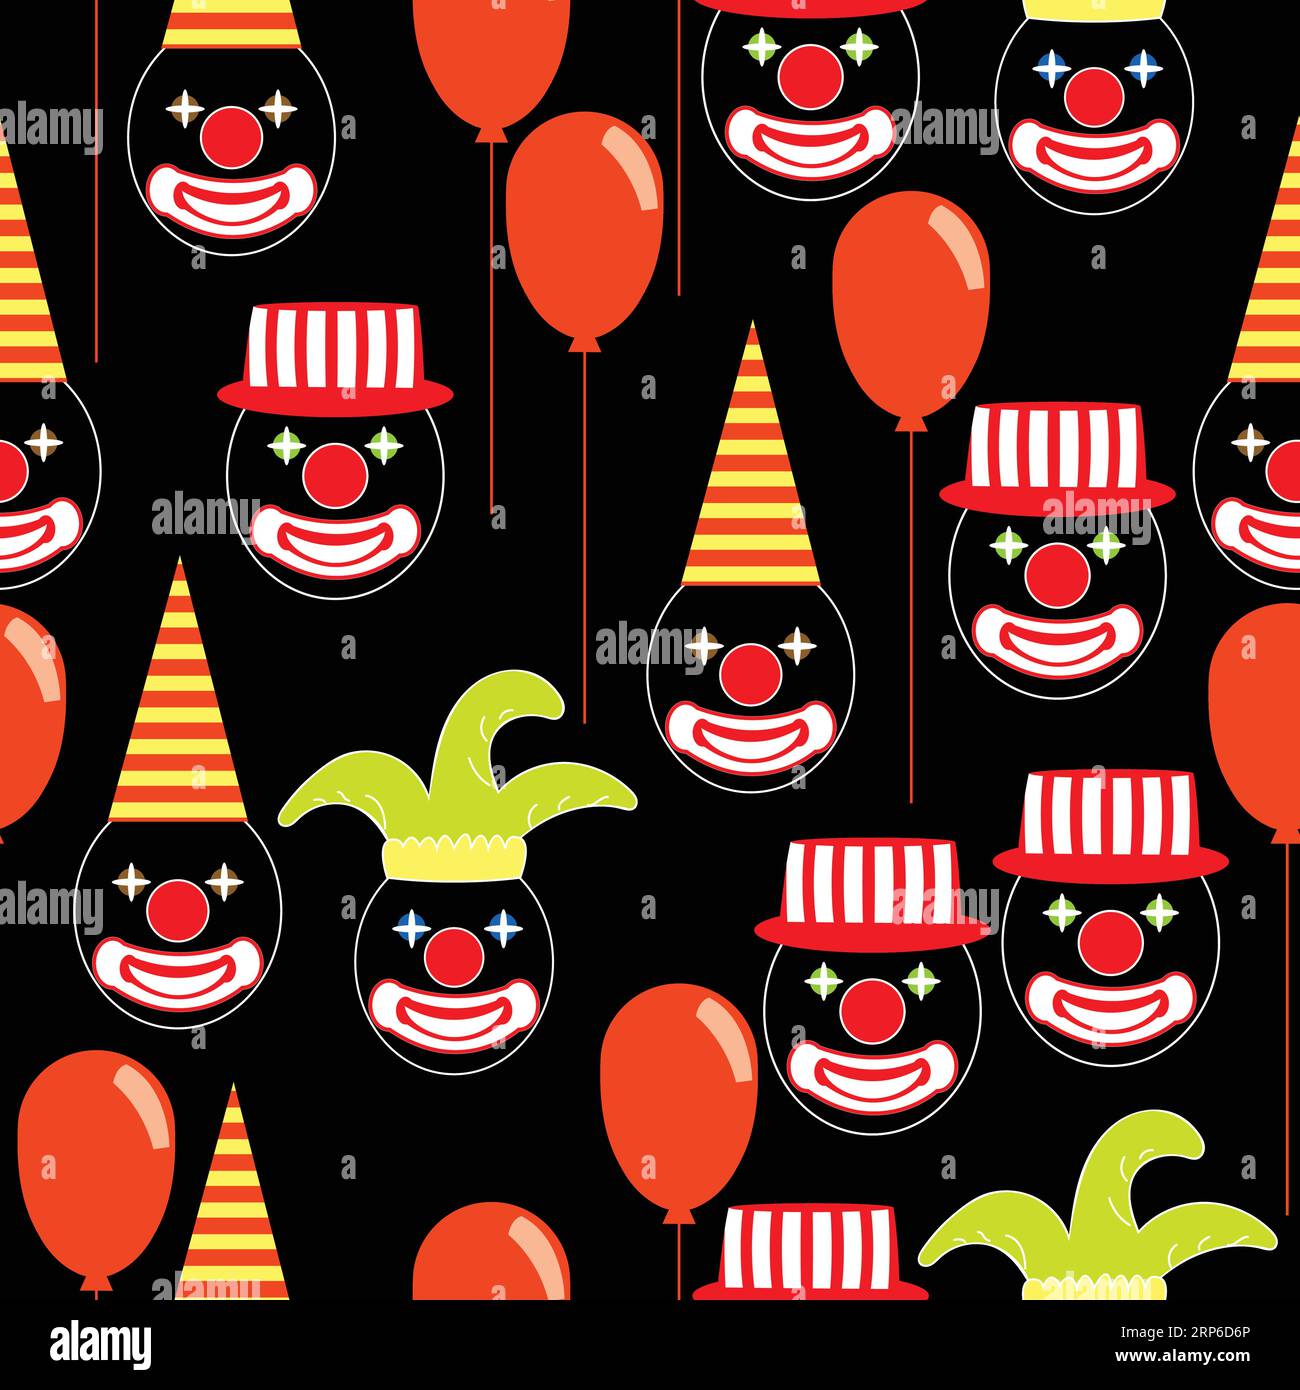 Modèle sans couture avec des visages de clown ronds avec des yeux brillants, des chapeaux et des baloons ; visages de clown drôles avec des chapeaux de carnaval et des baloons Illustration de Vecteur